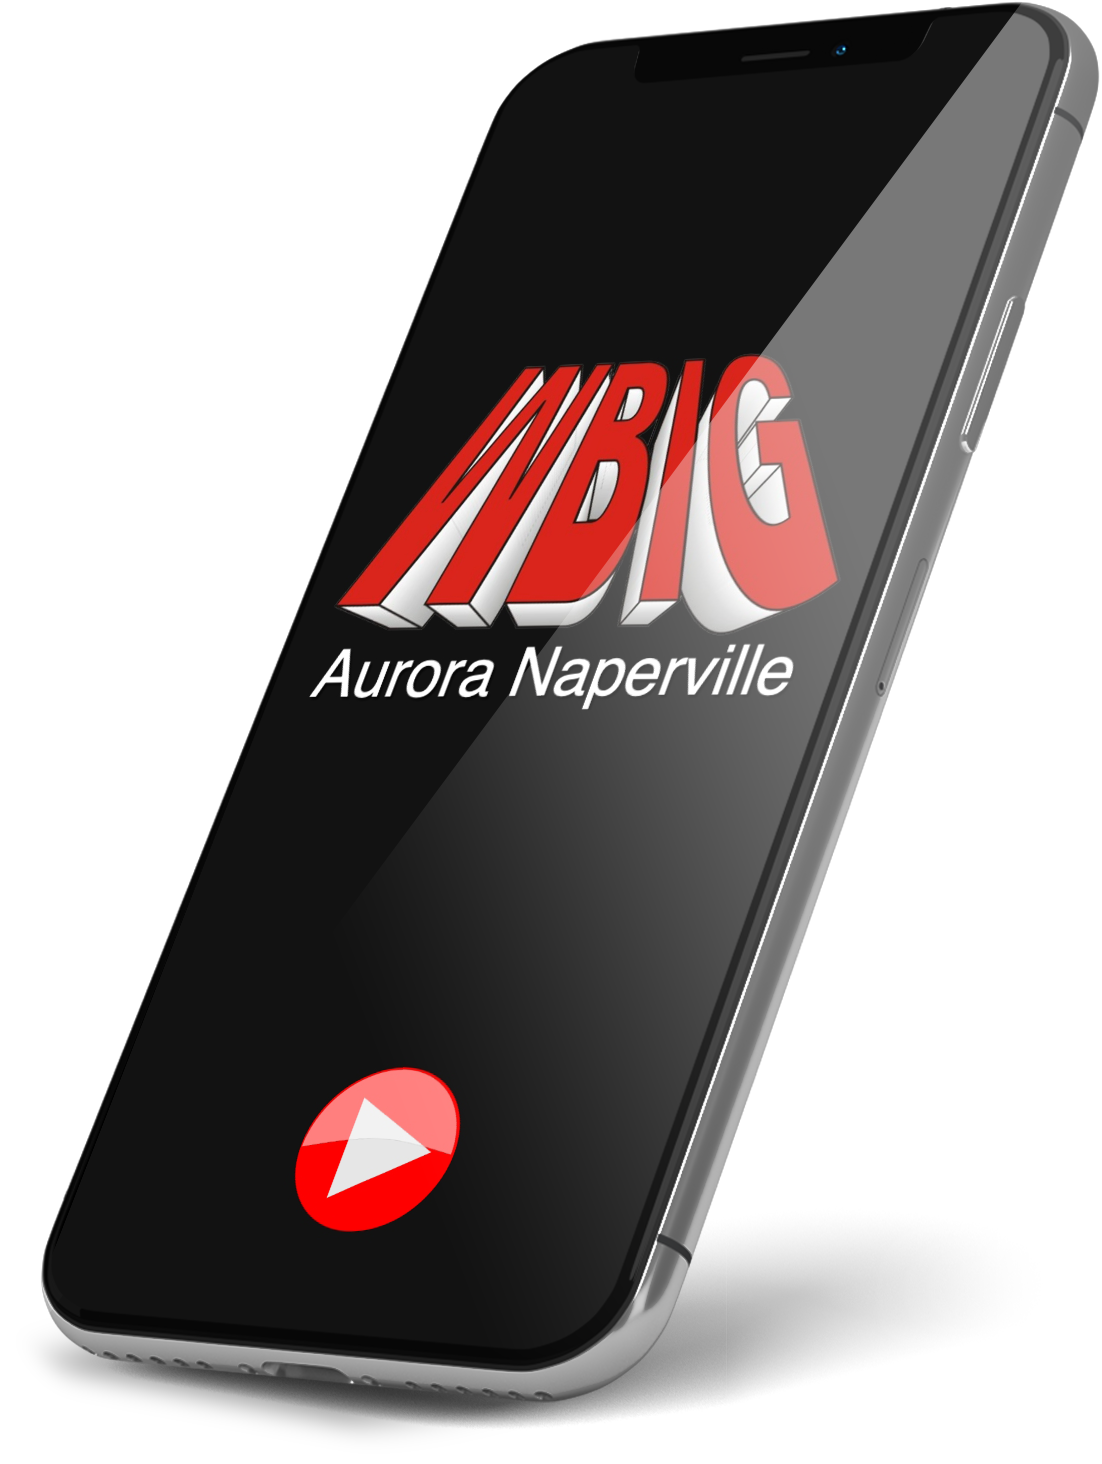 WBIG-aurora-naperville-iphone-stream